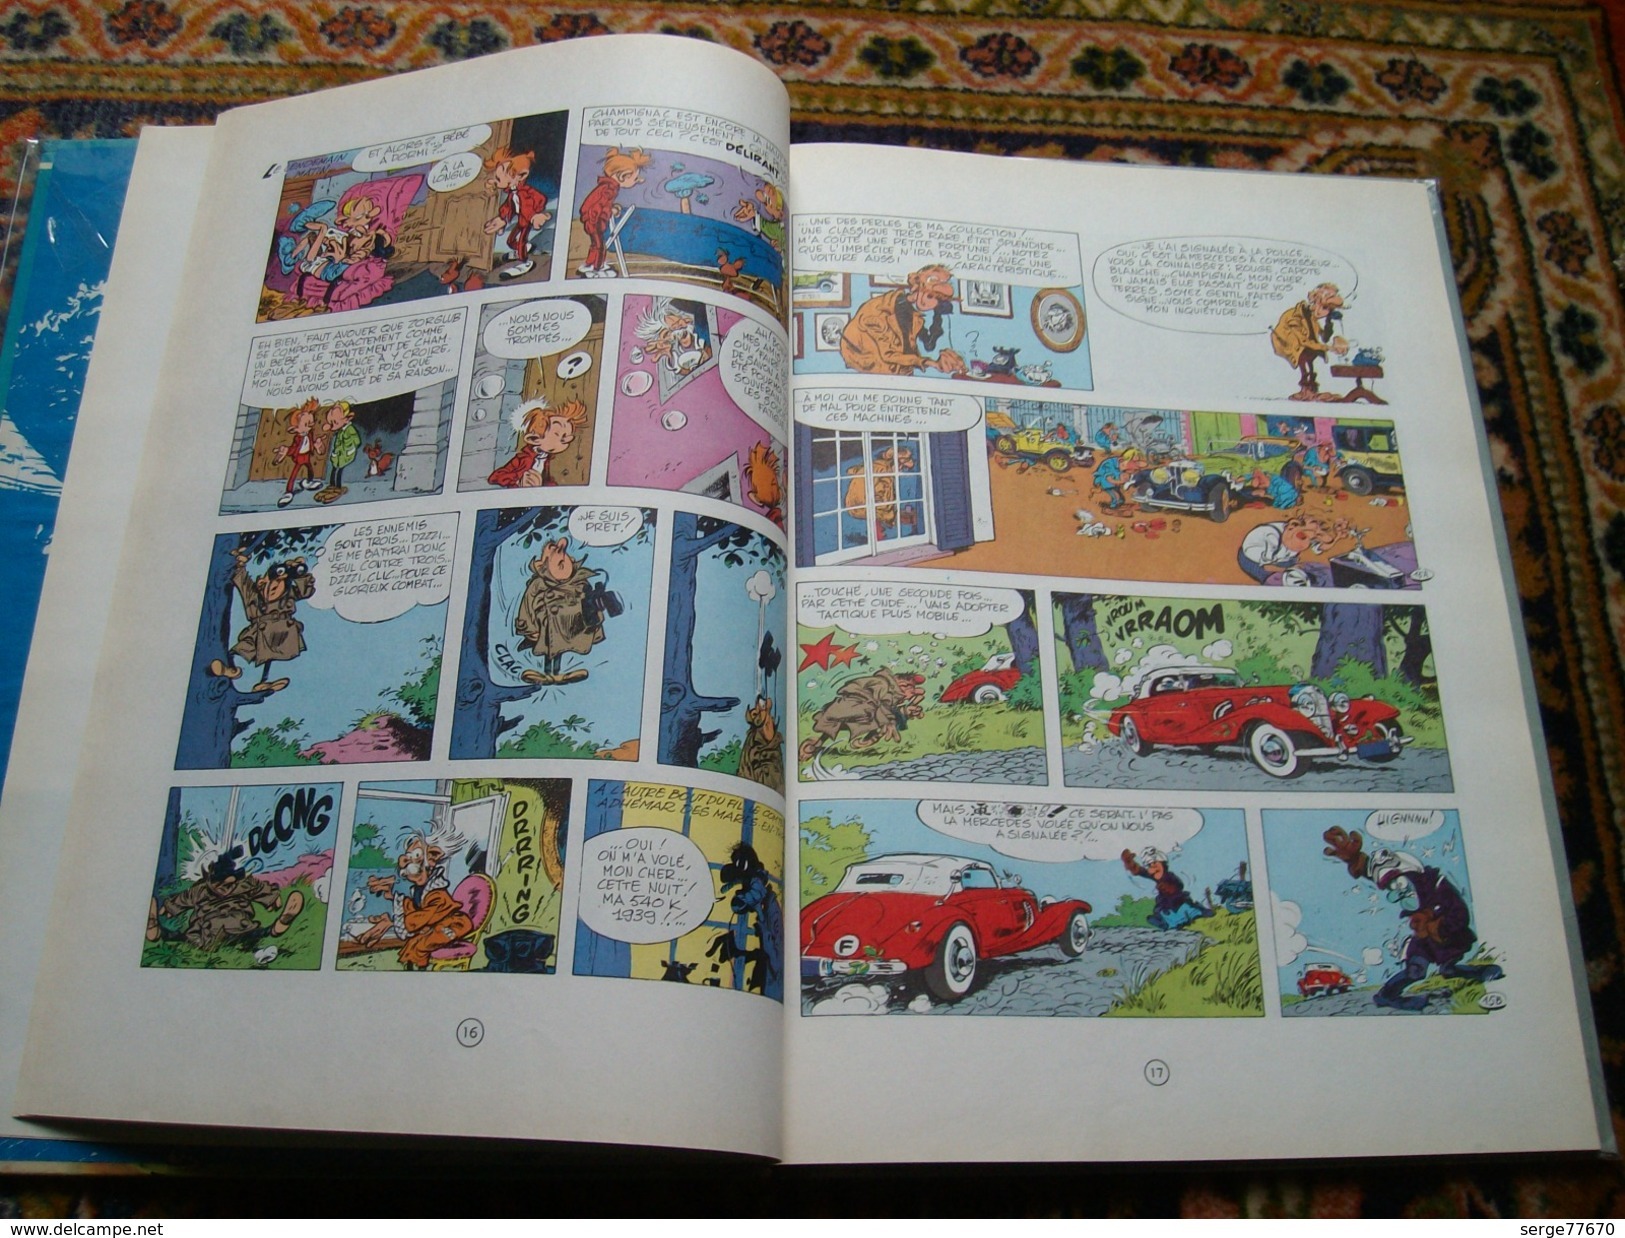 Spirou et Fantasio Franquin Panade à Champignac 1969 édition originale titre en bleu eo Dupuis